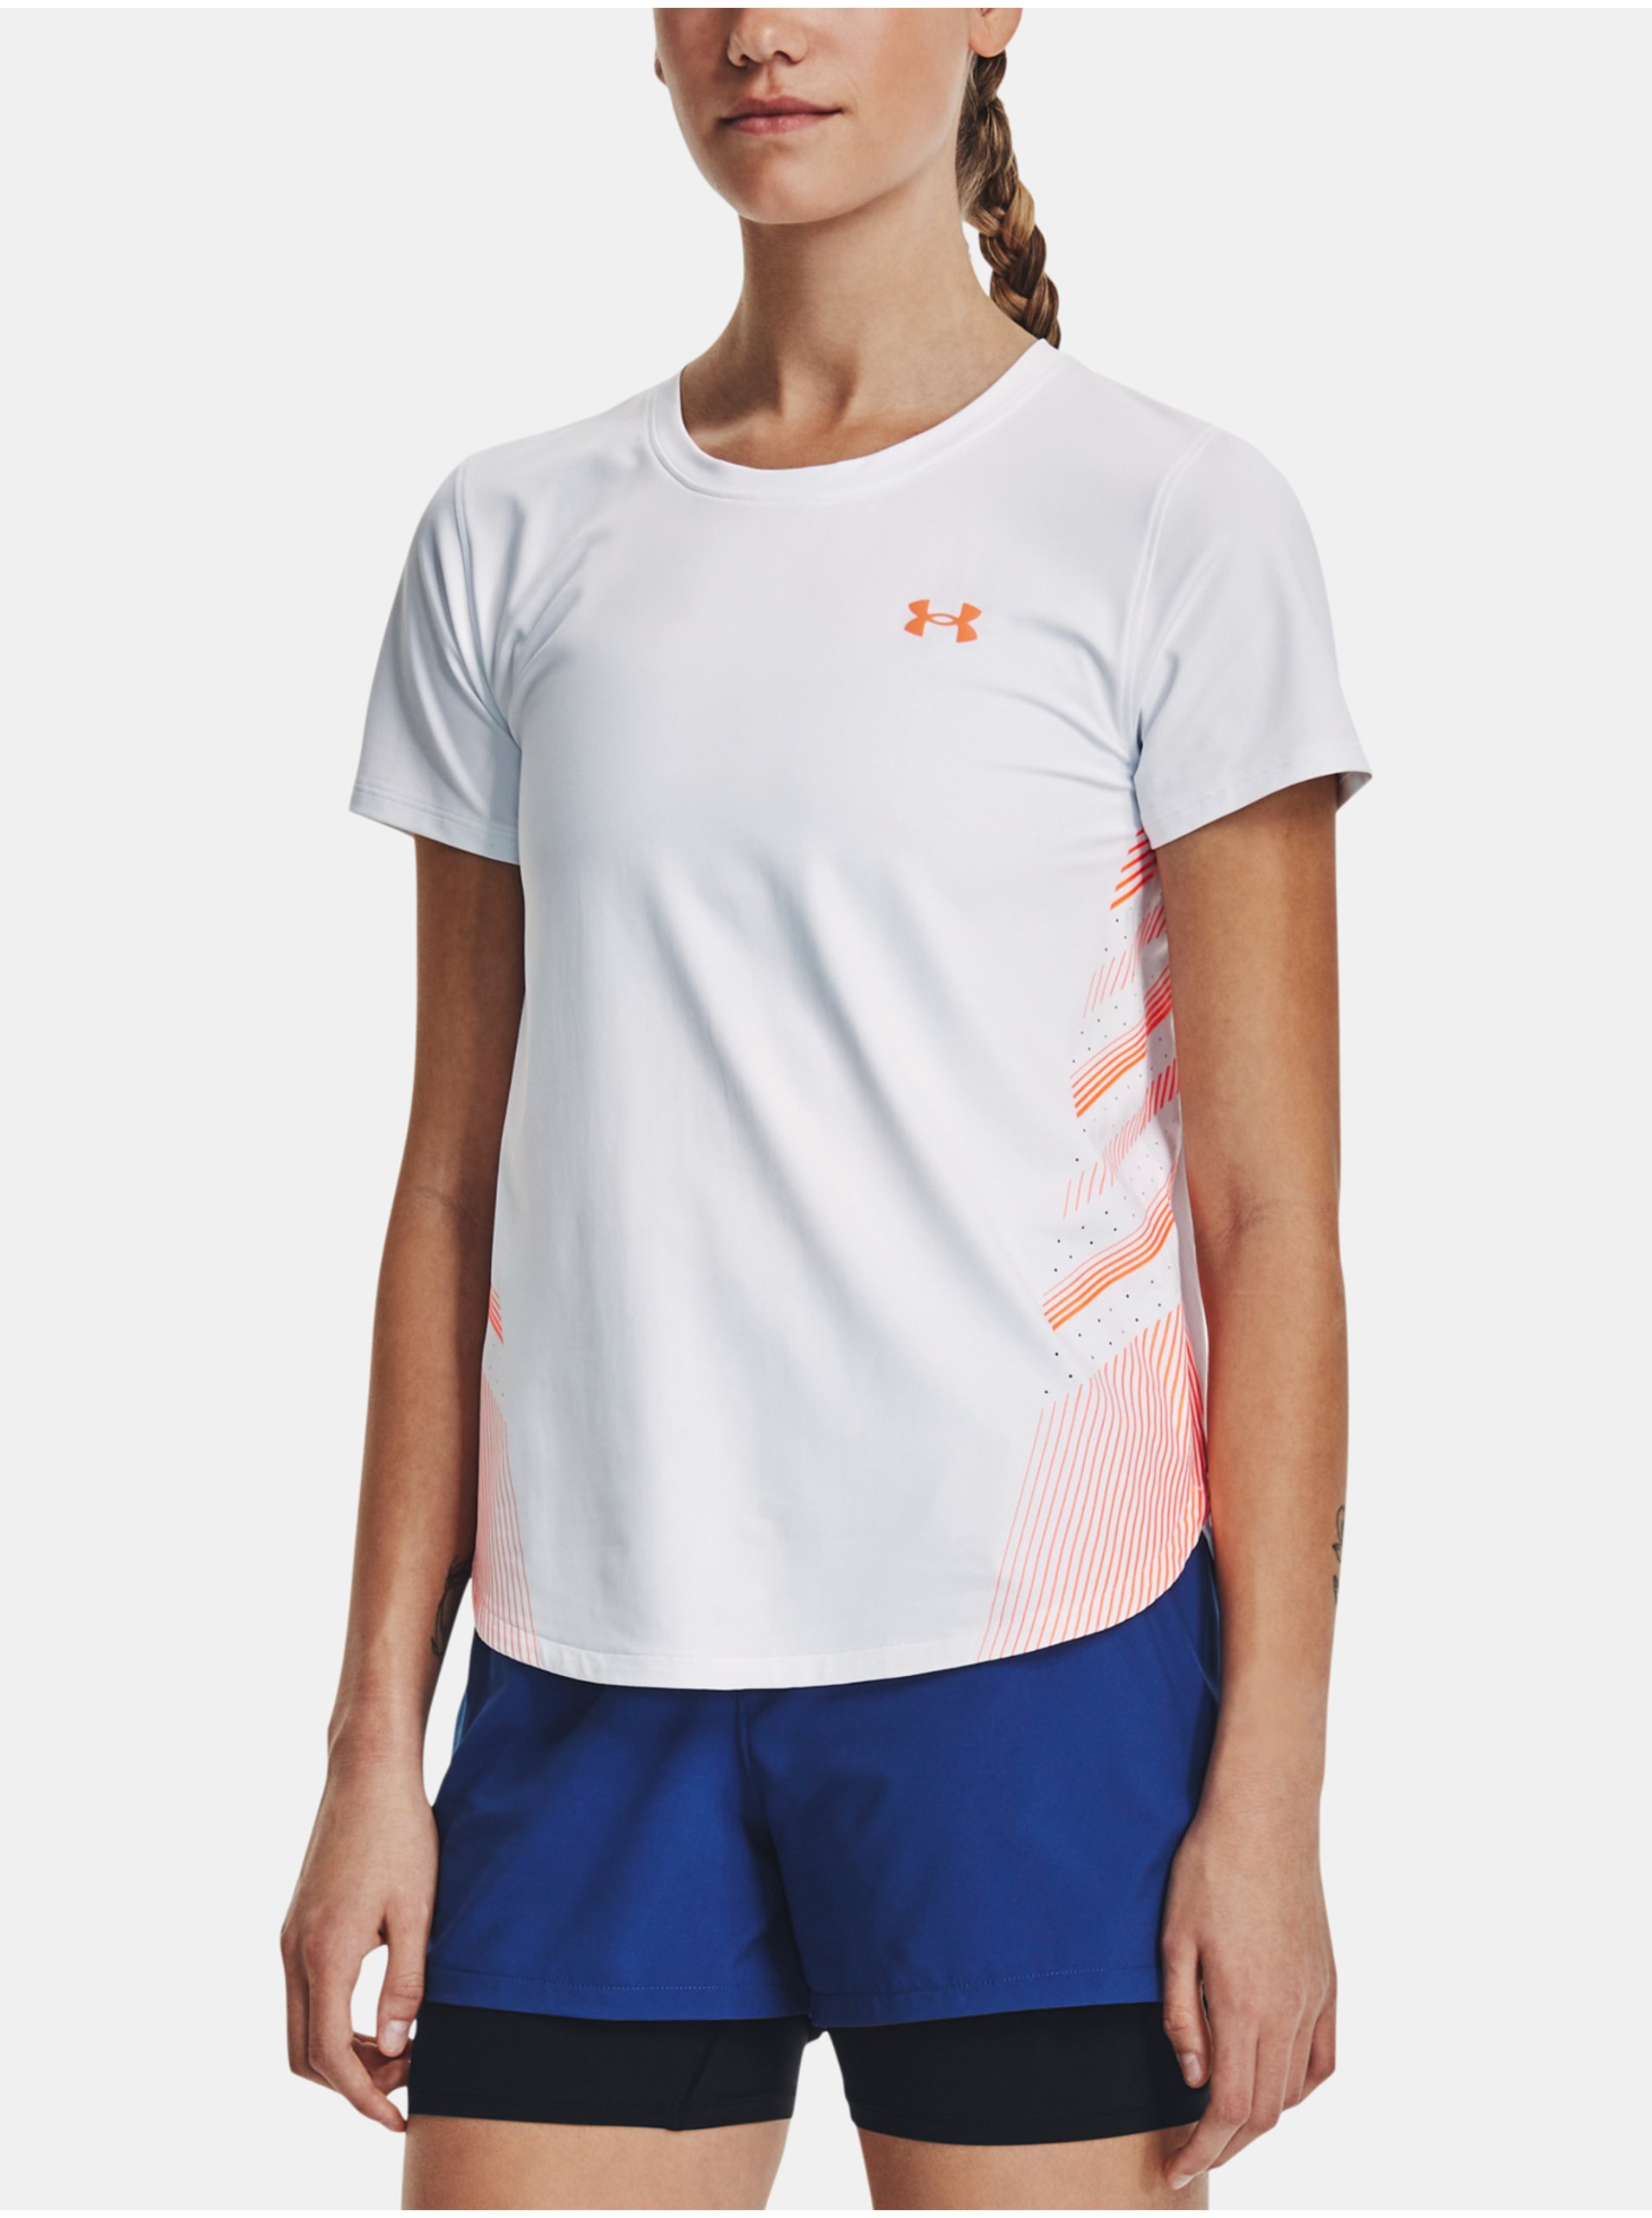 Lacno Biele dámske športové tričko Under Armour UA Iso-Chill Laser